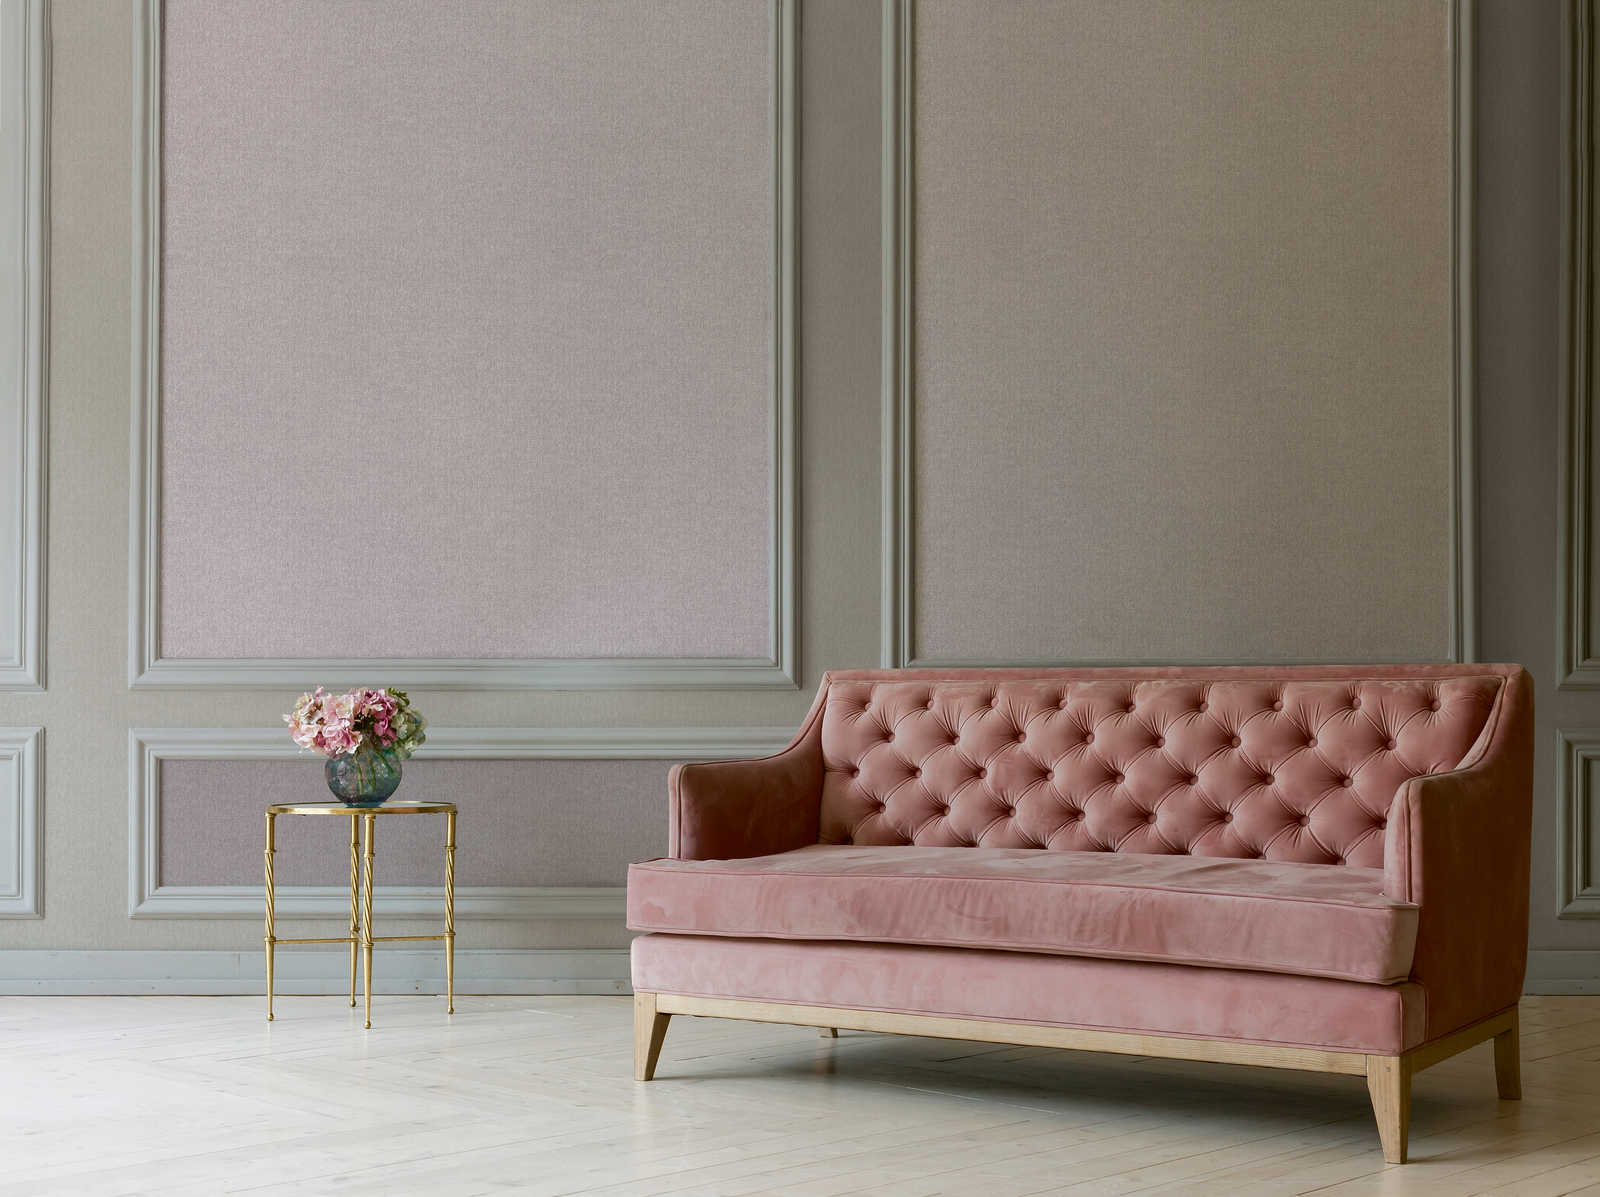             Vliesbehang roze met structuureffect & textielopics
        